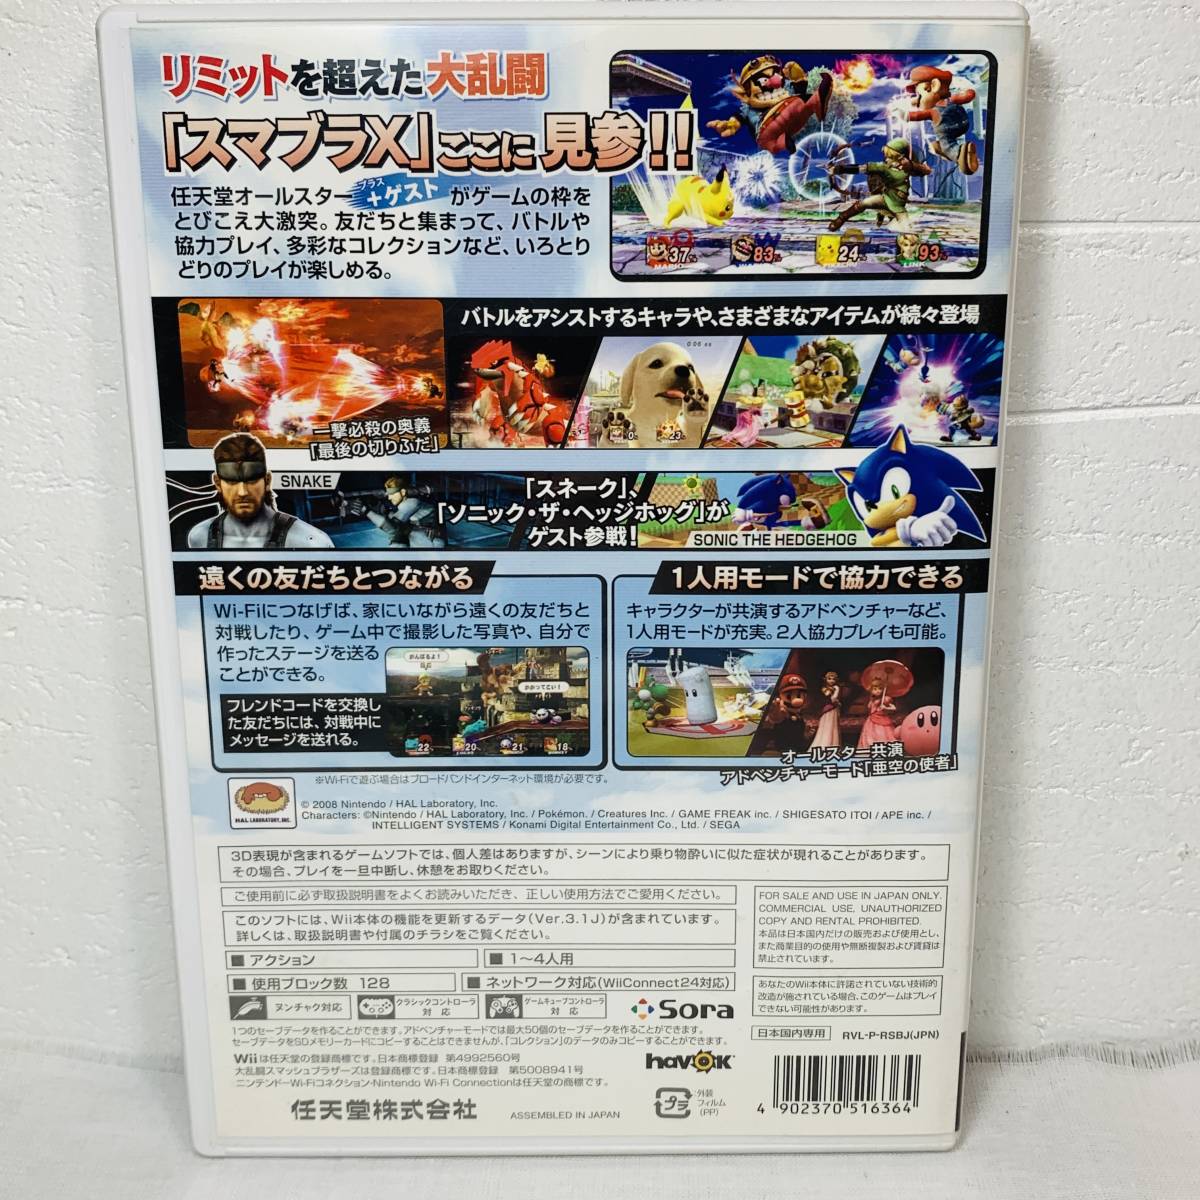 Wii ソフト 大乱闘スマッシュブラザーズ エックス ゲームソフト USED品 1円スタート_画像2